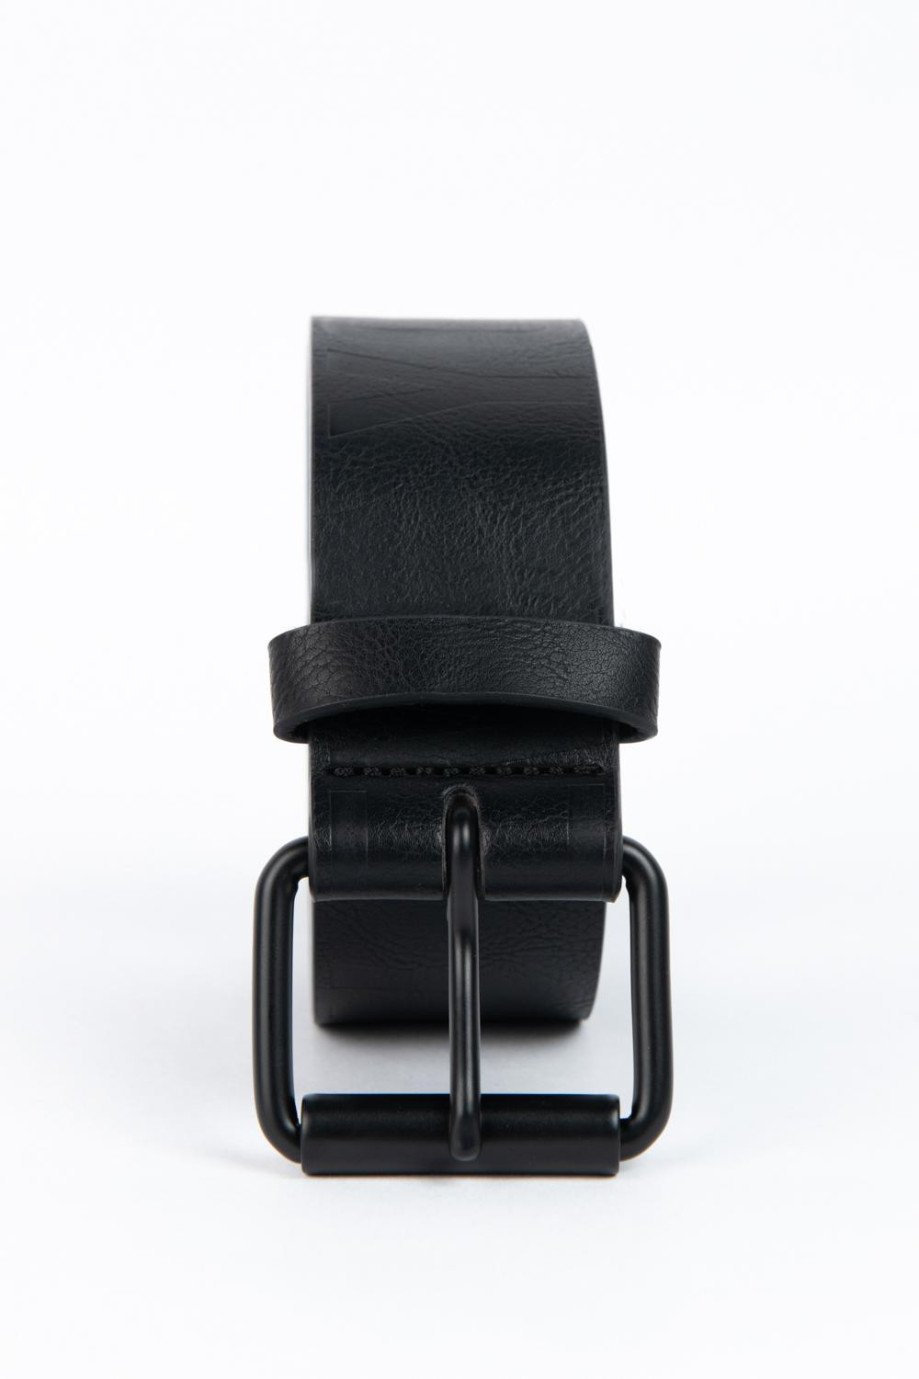 Cinturón negro con pasador y hebilla metálica cuadrada